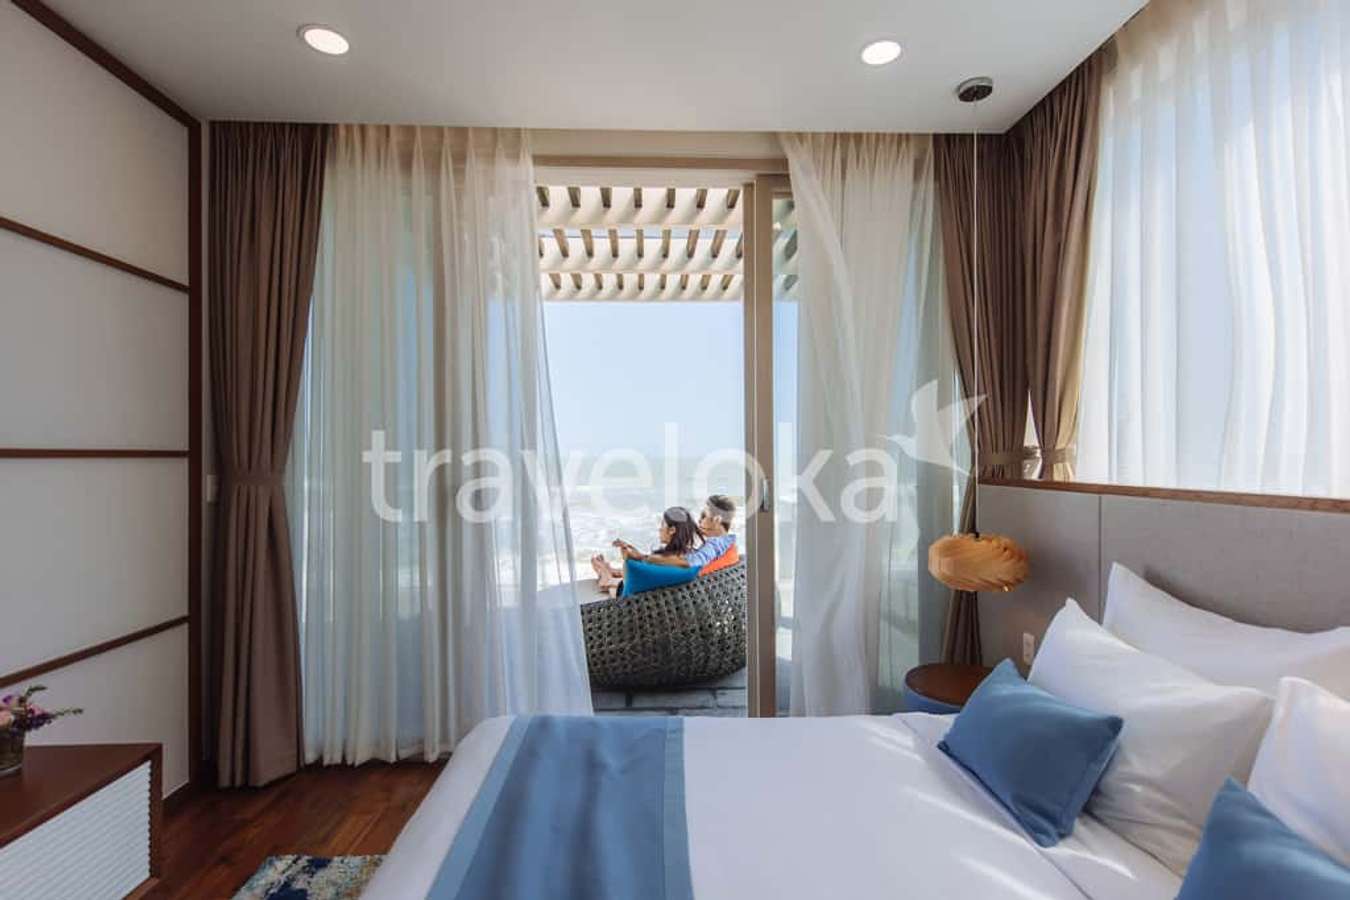 Oceanami Villas & Beach Club - khách sạn đẹp Vũng Tàu